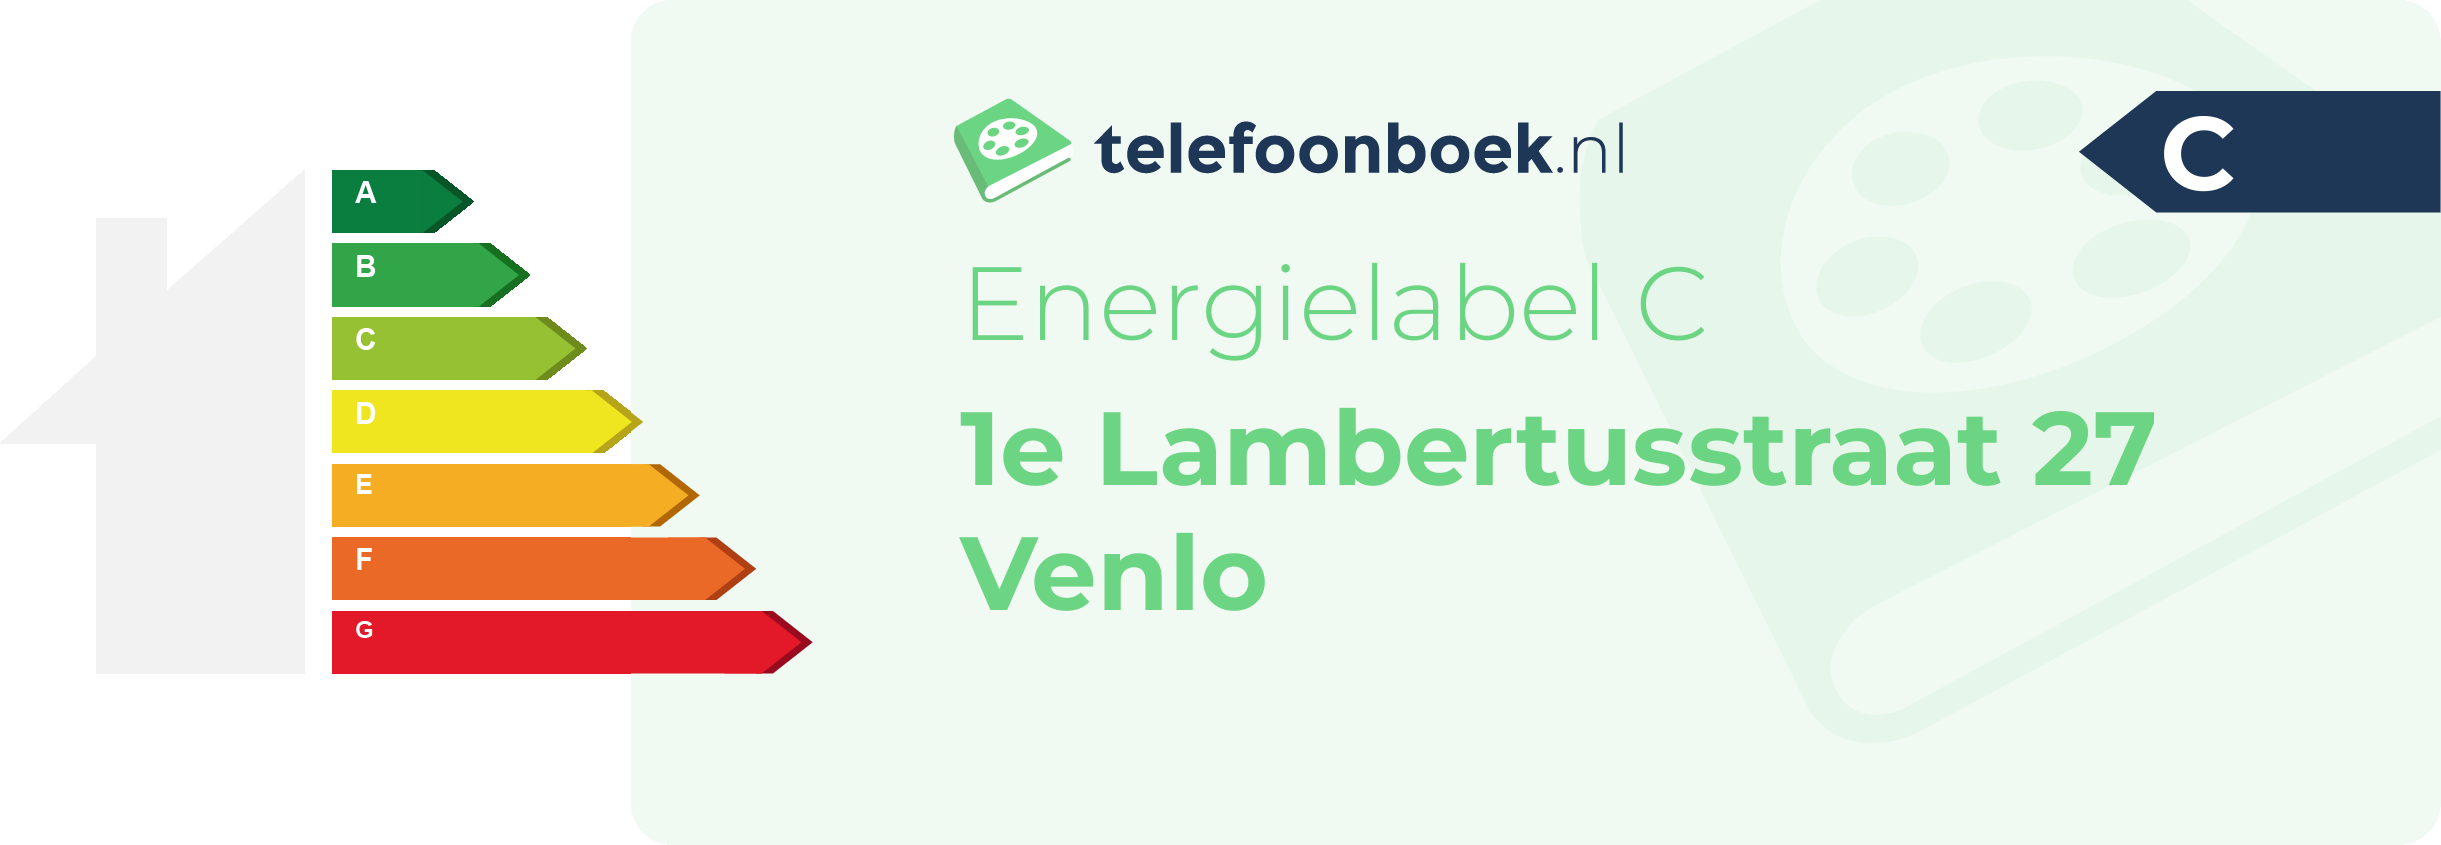 Energielabel 1e Lambertusstraat 27 Venlo